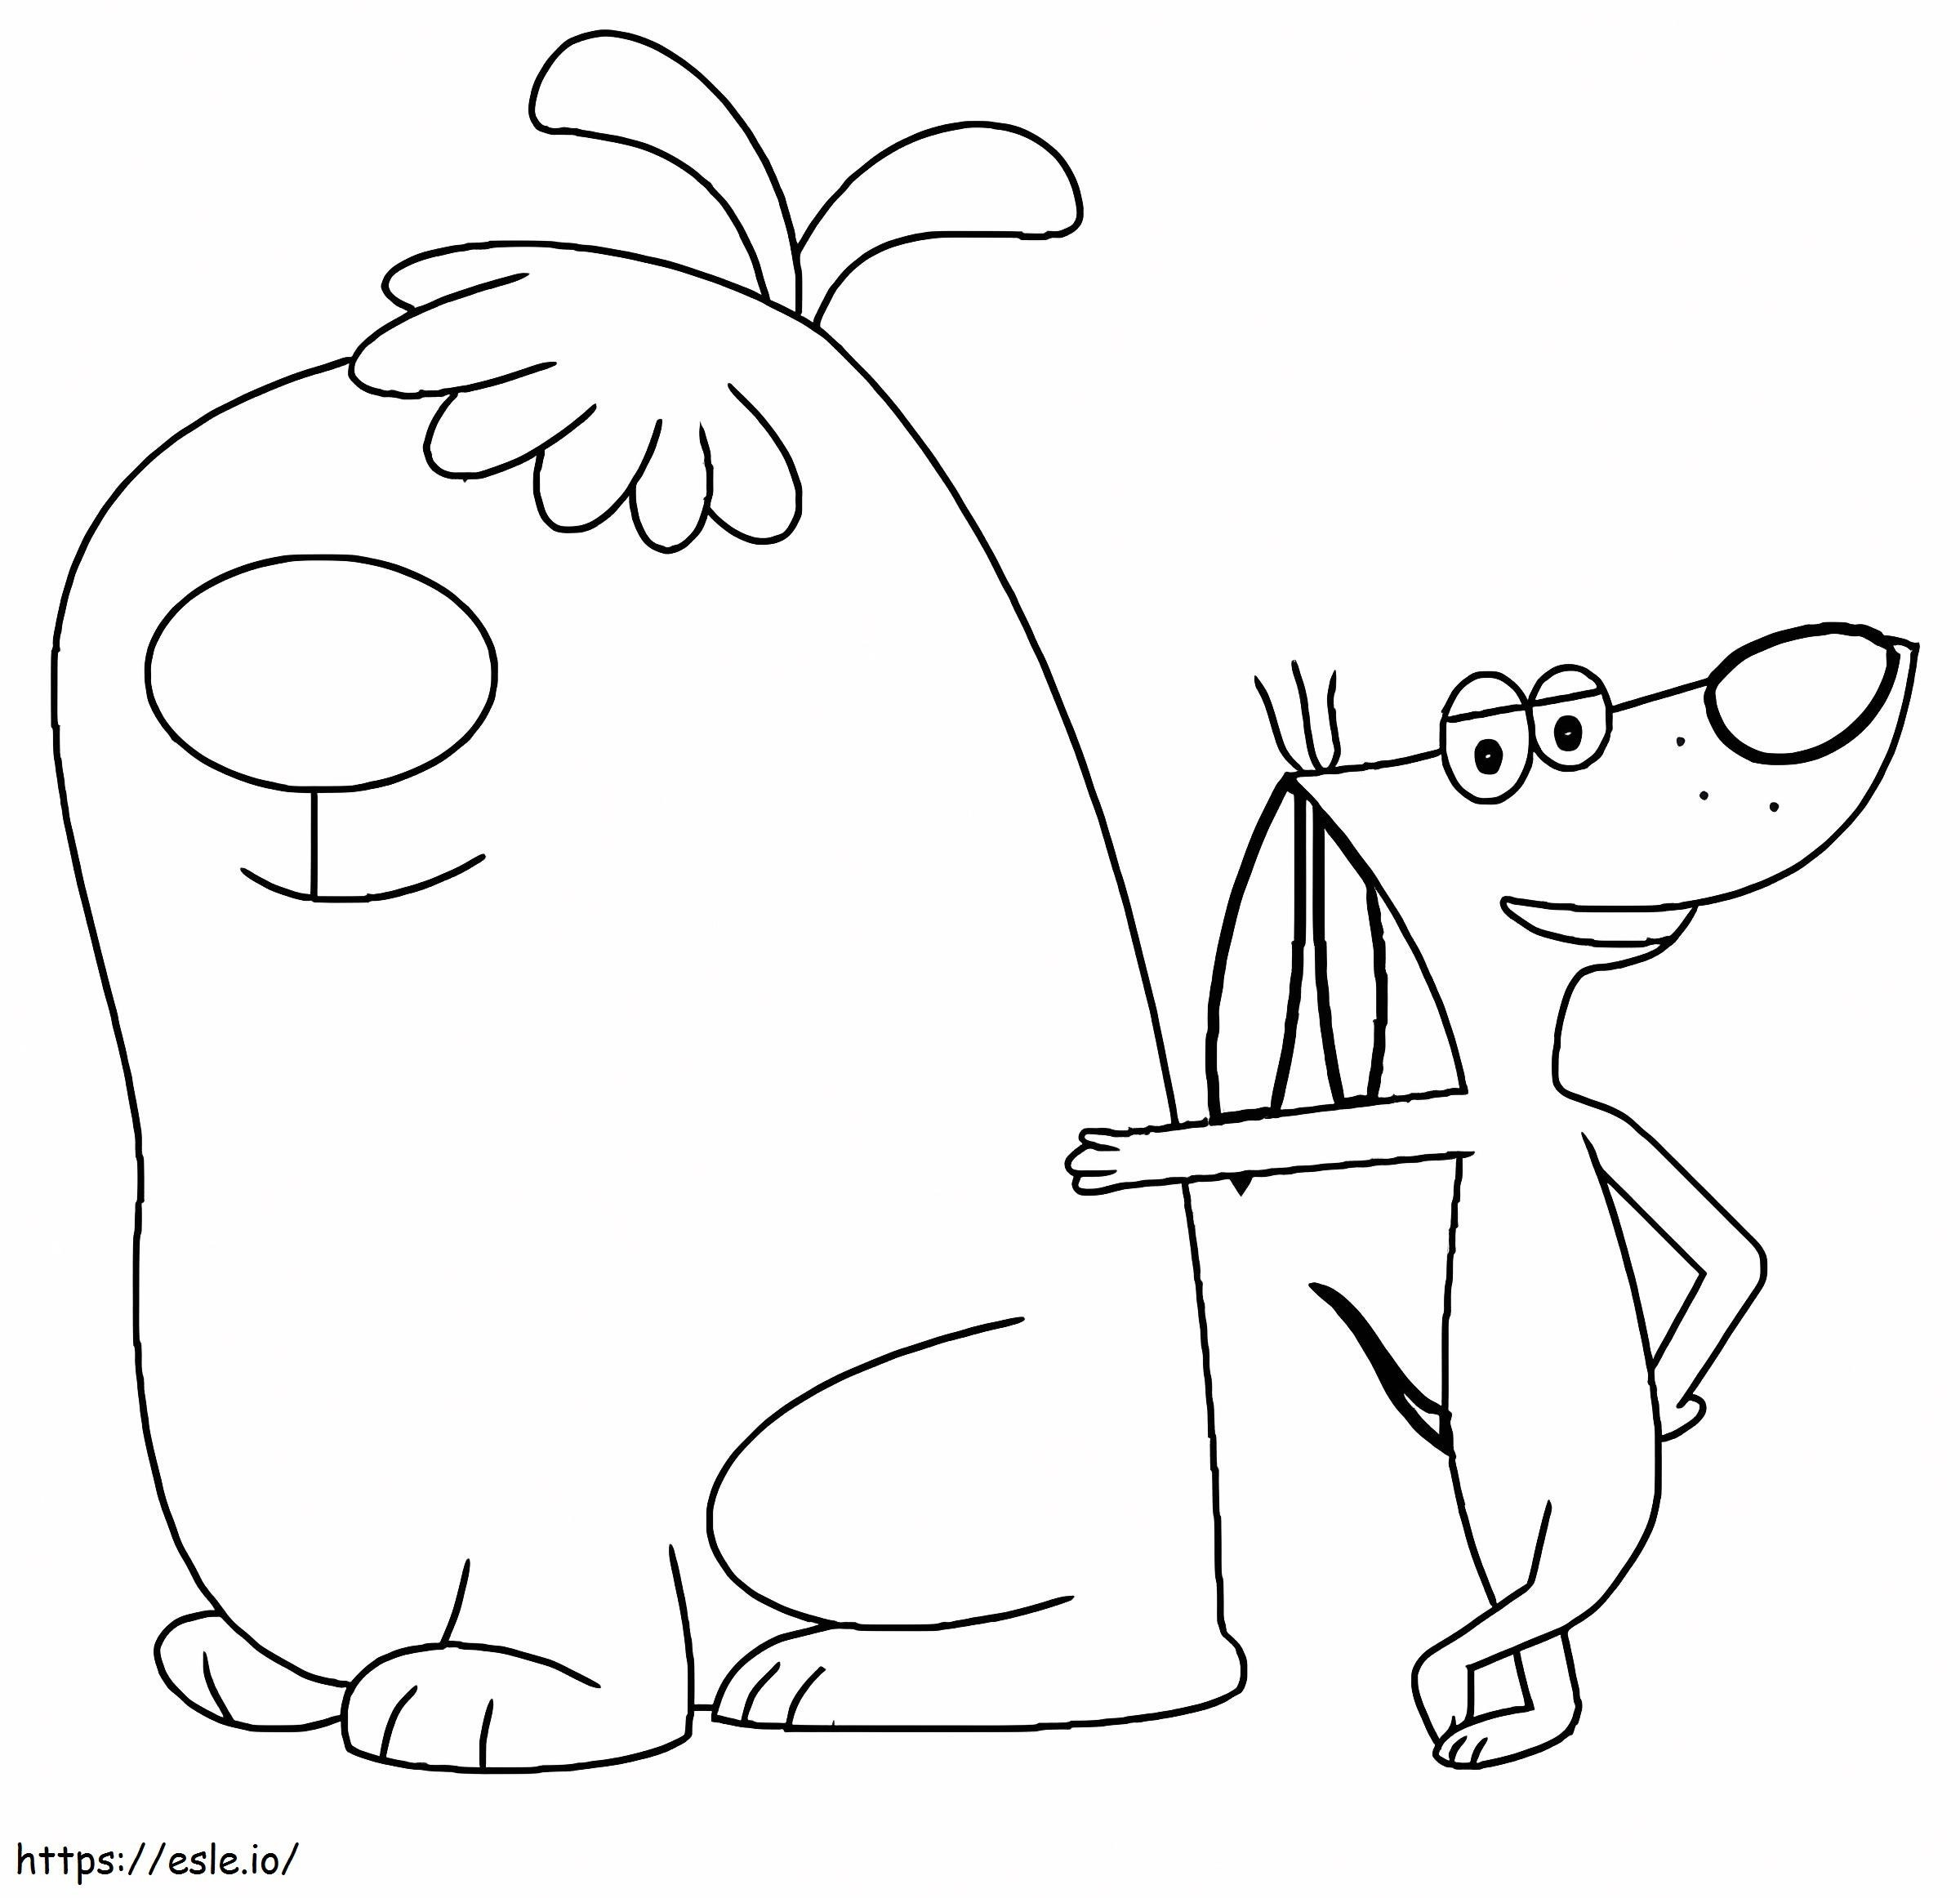 De kleine hond en de grote hond kleurplaat kleurplaat